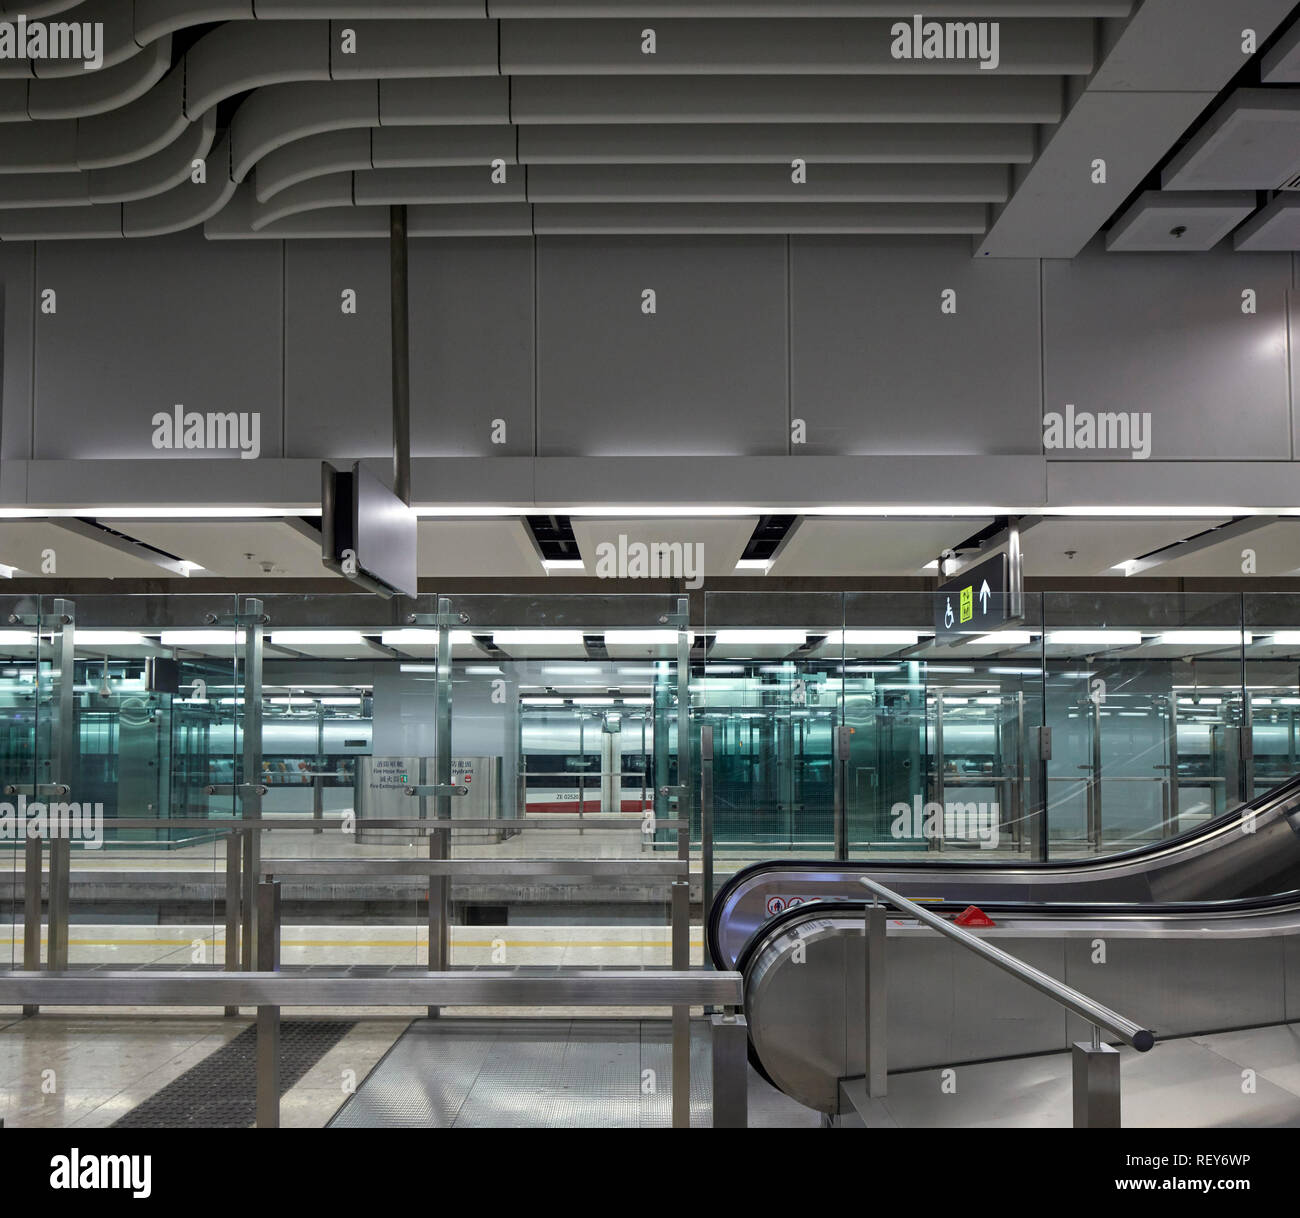 Plate-forme du train. La gare de West Kowloon, Hong Kong, Chine. Architecte : Andrew Bromberg Aedas, 2018. Banque D'Images